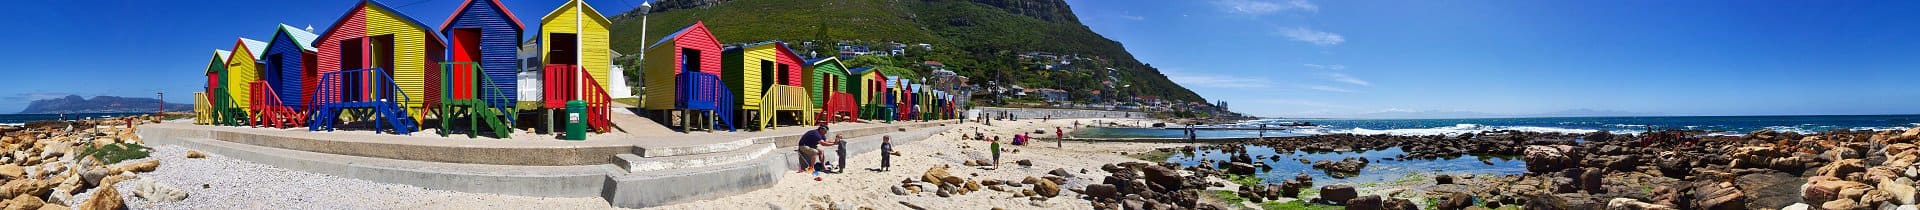 St. James mit bunten Strandhäuschen an der False Bay Küste | Kapstadt, Südafrika